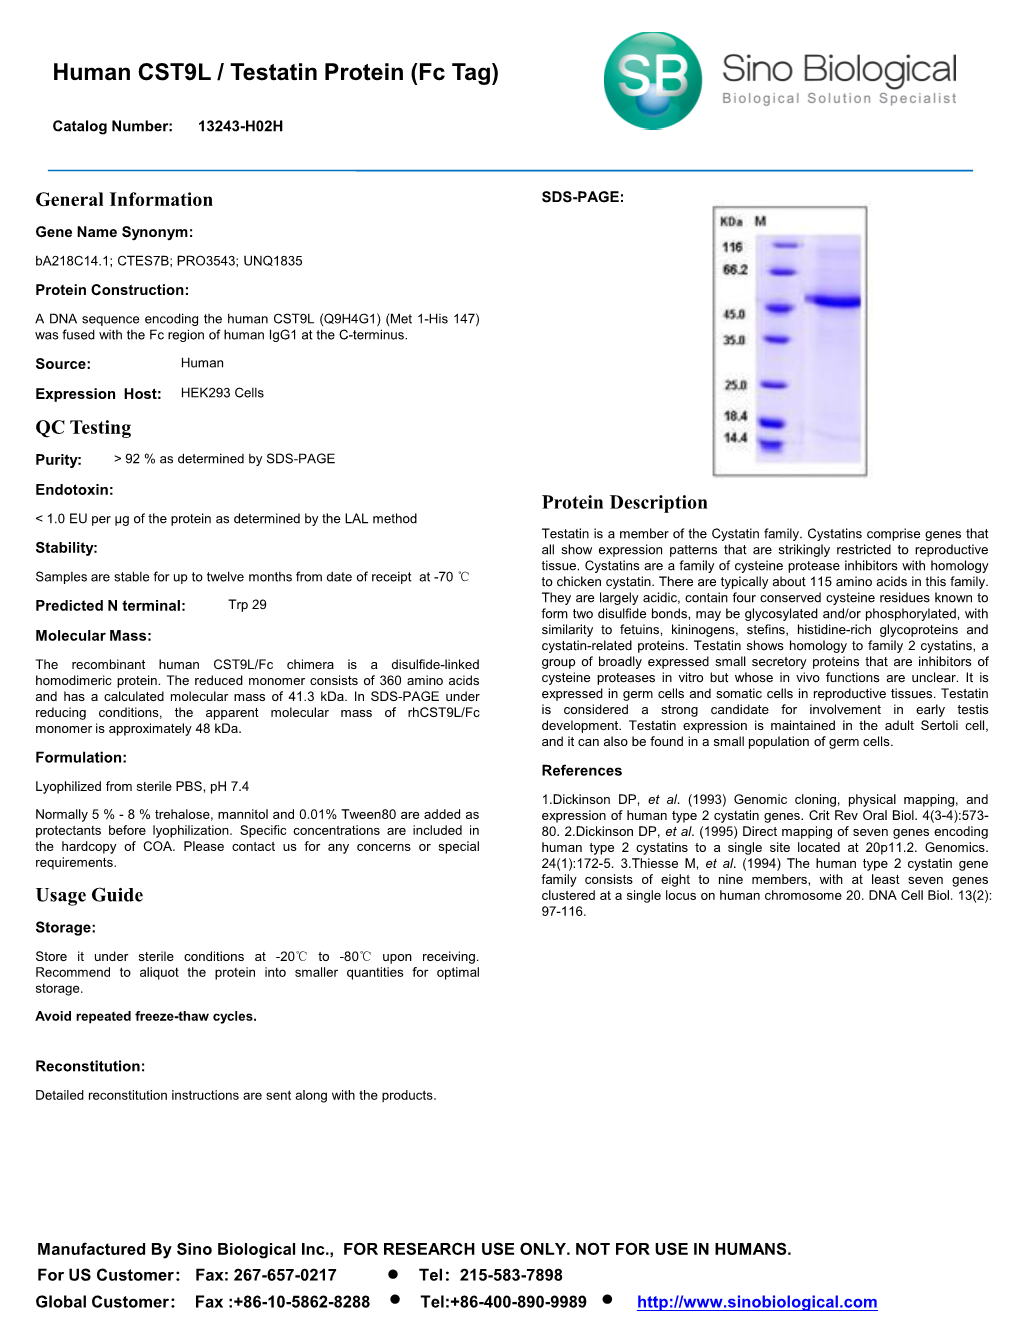 Human CST9L / Testatin Protein (Fc Tag)